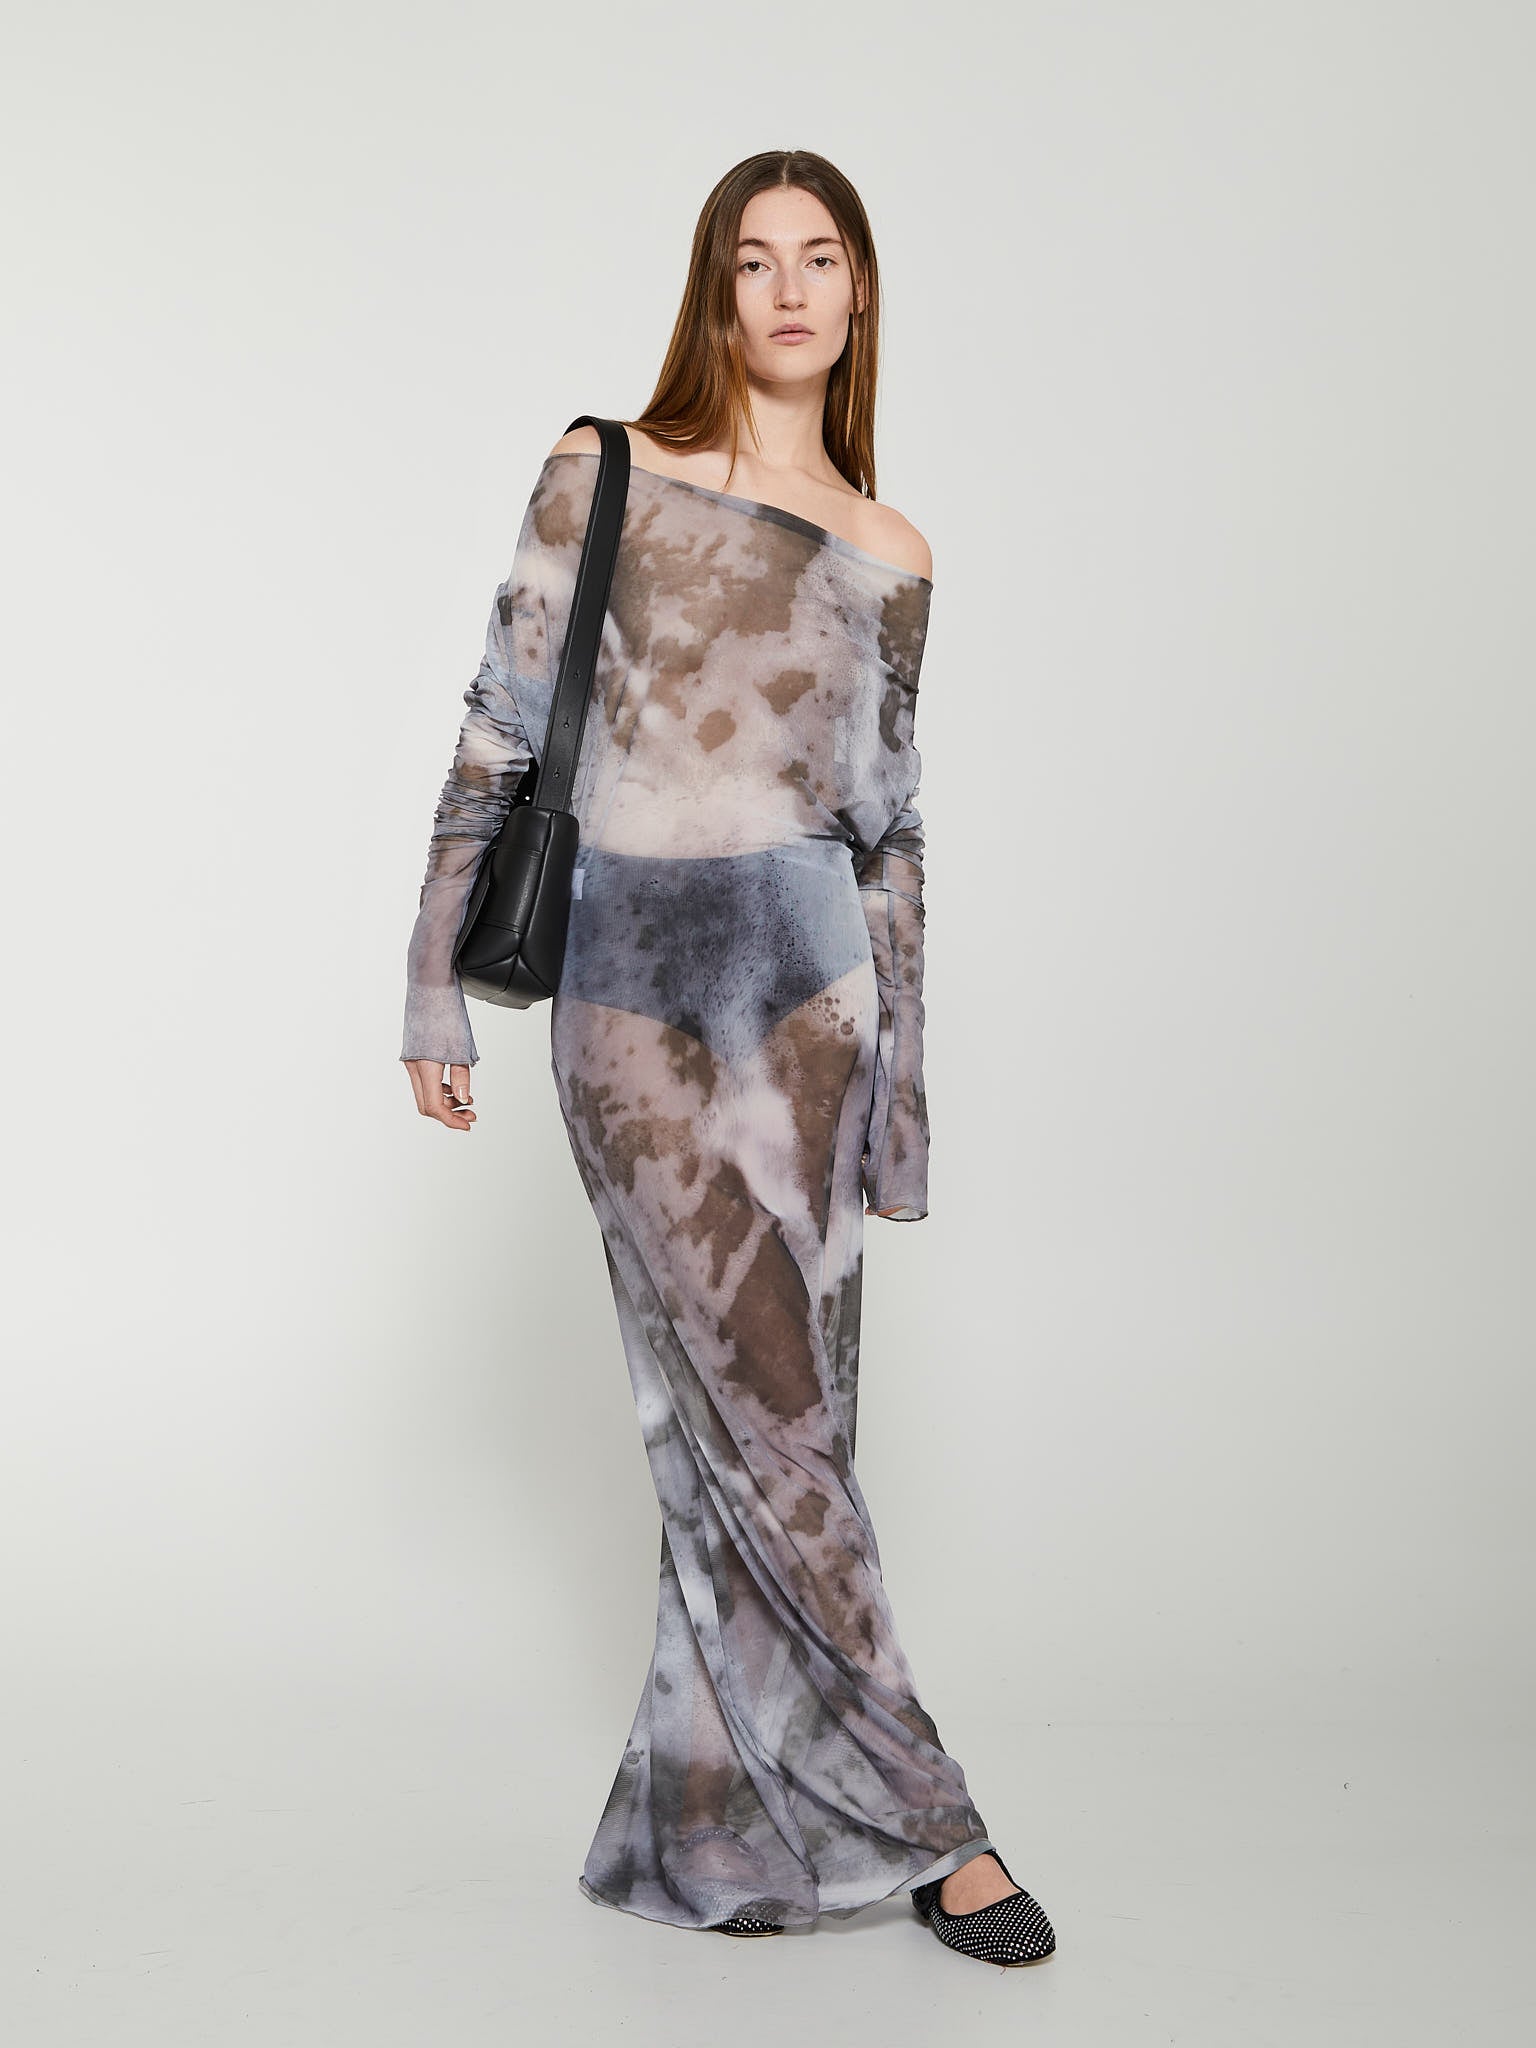 Foamy Dress in Sea Print